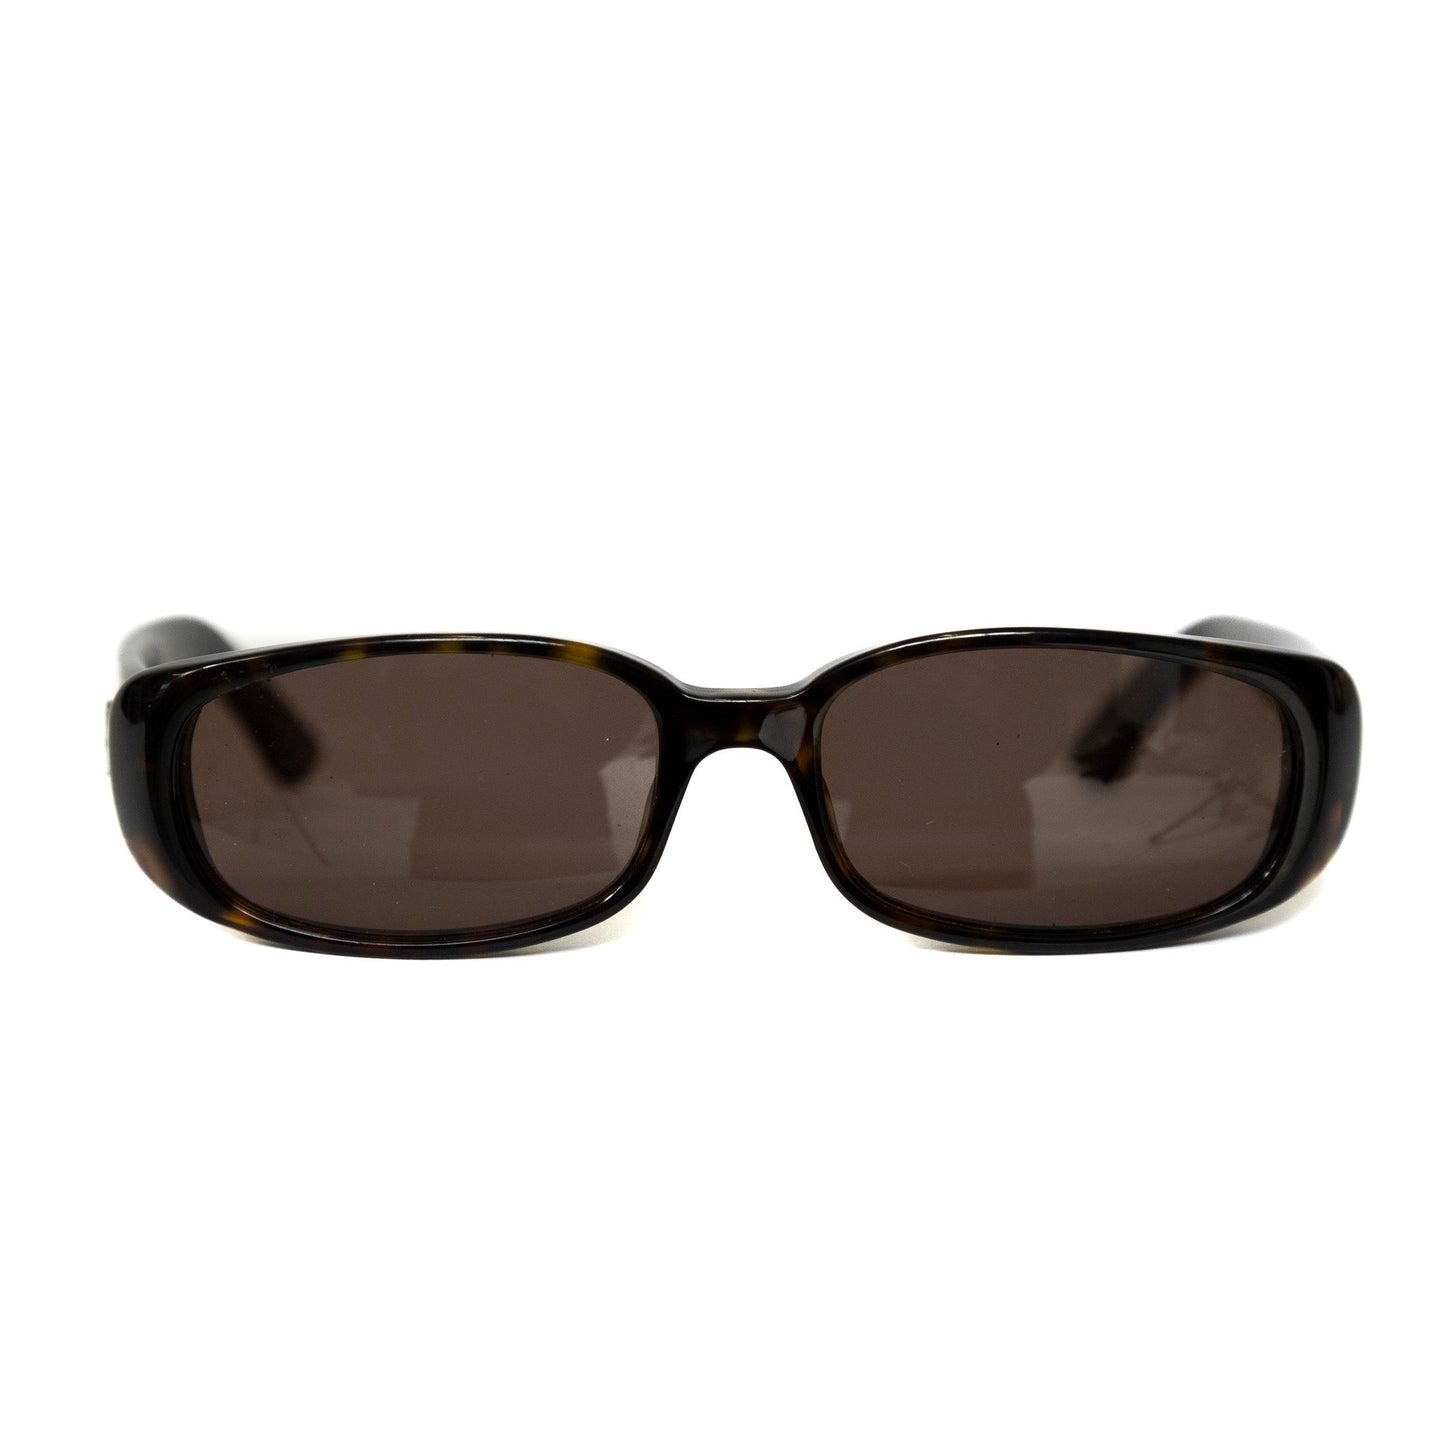 Gucci Brown Oval Sunglasses